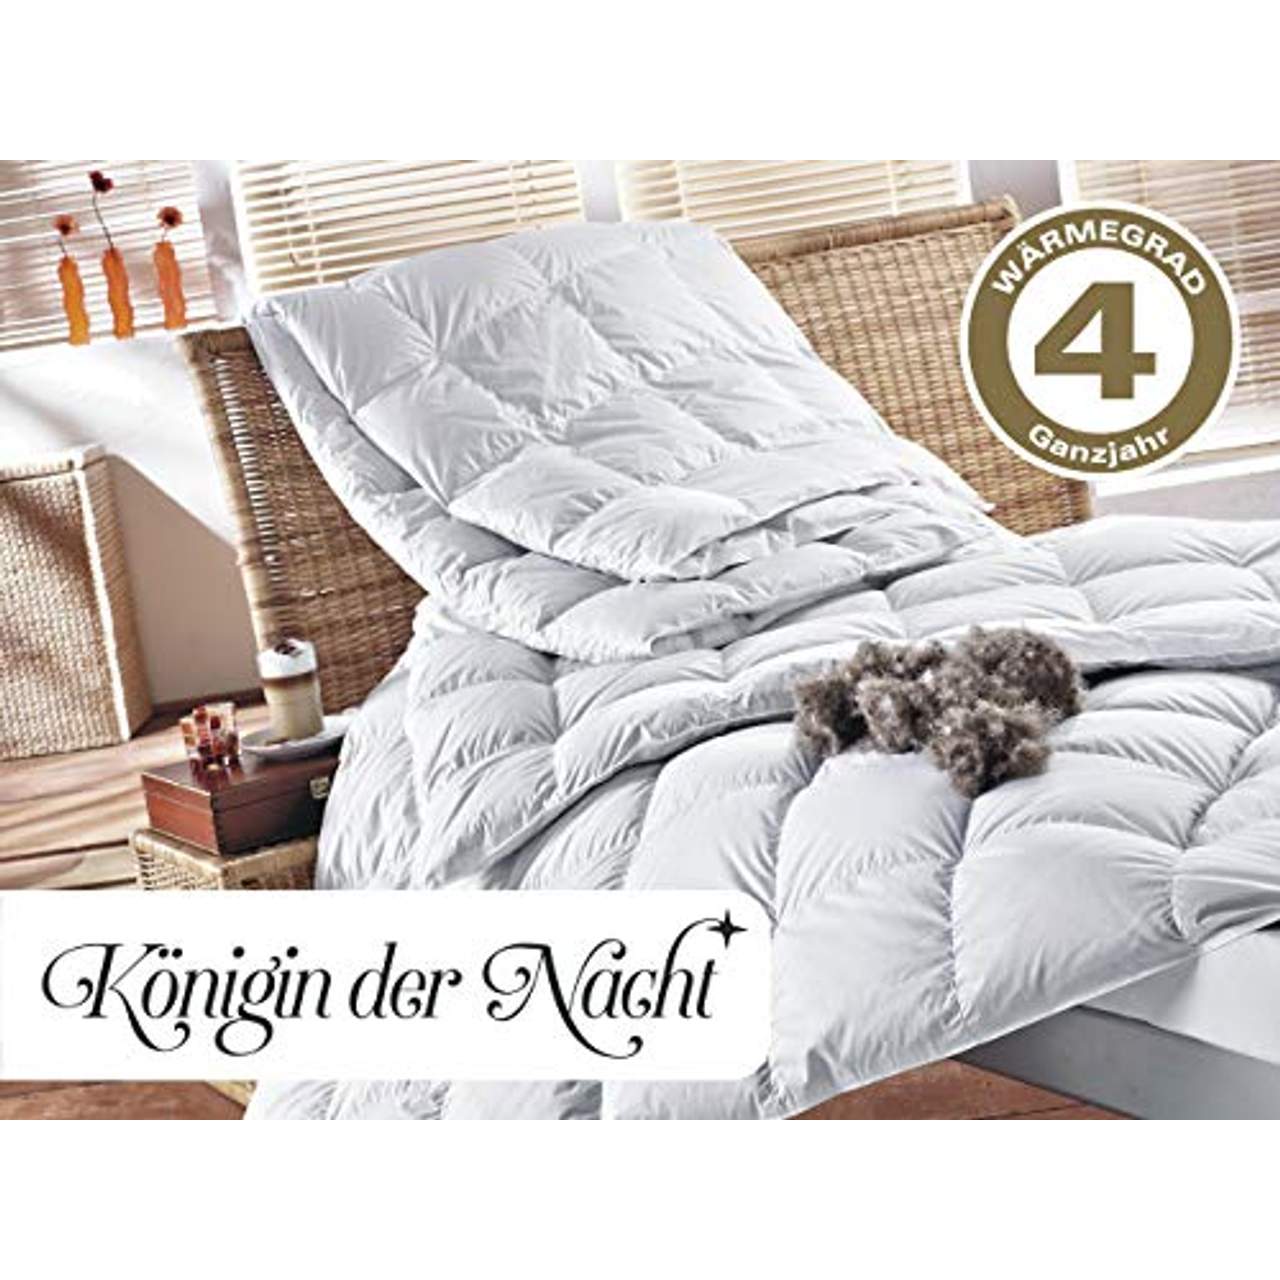 Königin der Nacht Original Eiderdaune Bettdecke 135x200 cm